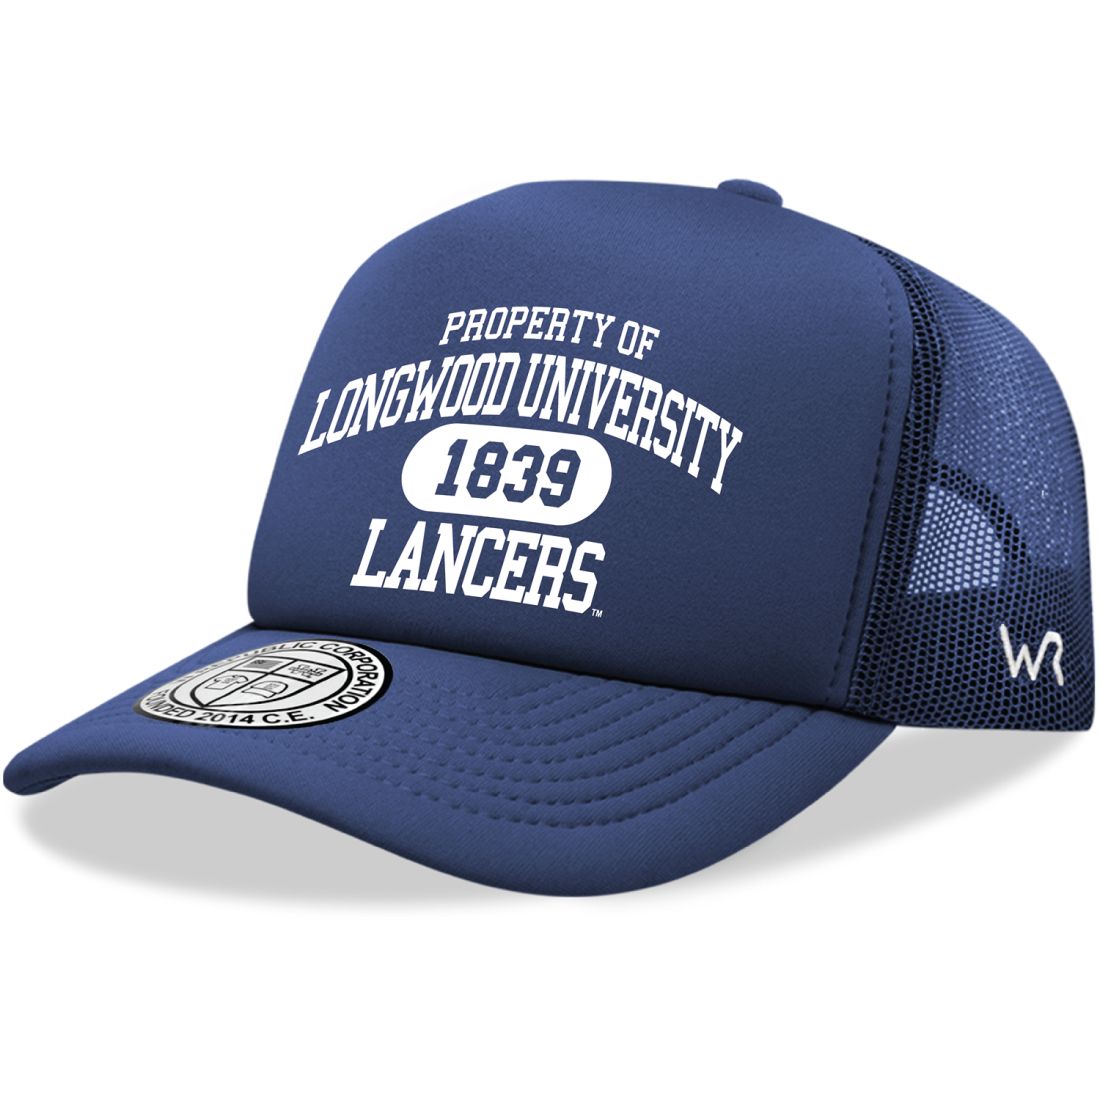 Longwood University Lancers Property Foam Trucker Hats